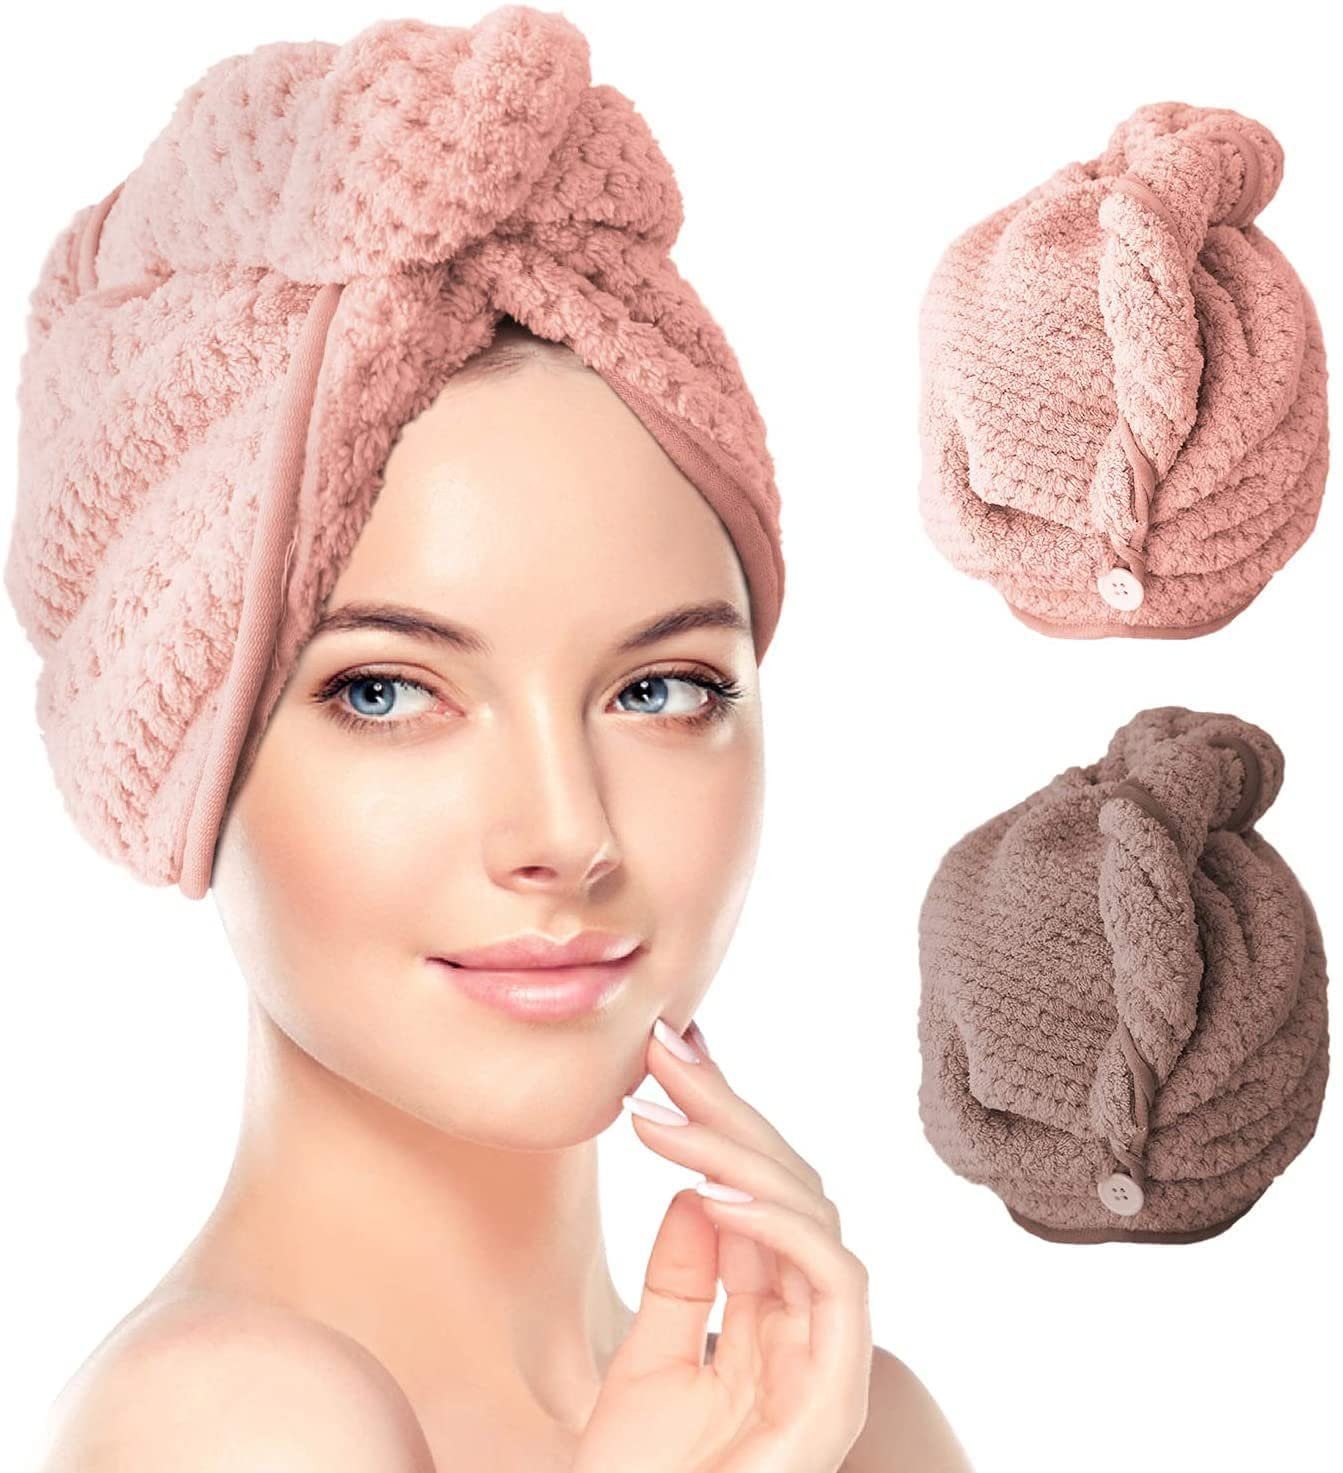 GCOA 3PCS Haartrockentuch Haarturban Handtuch für die Haare,Haar Handtuch Turban Schnelltrocknendes Handtuch für Mädchen Frauen Pink & Beige & Dunkler Kaffee